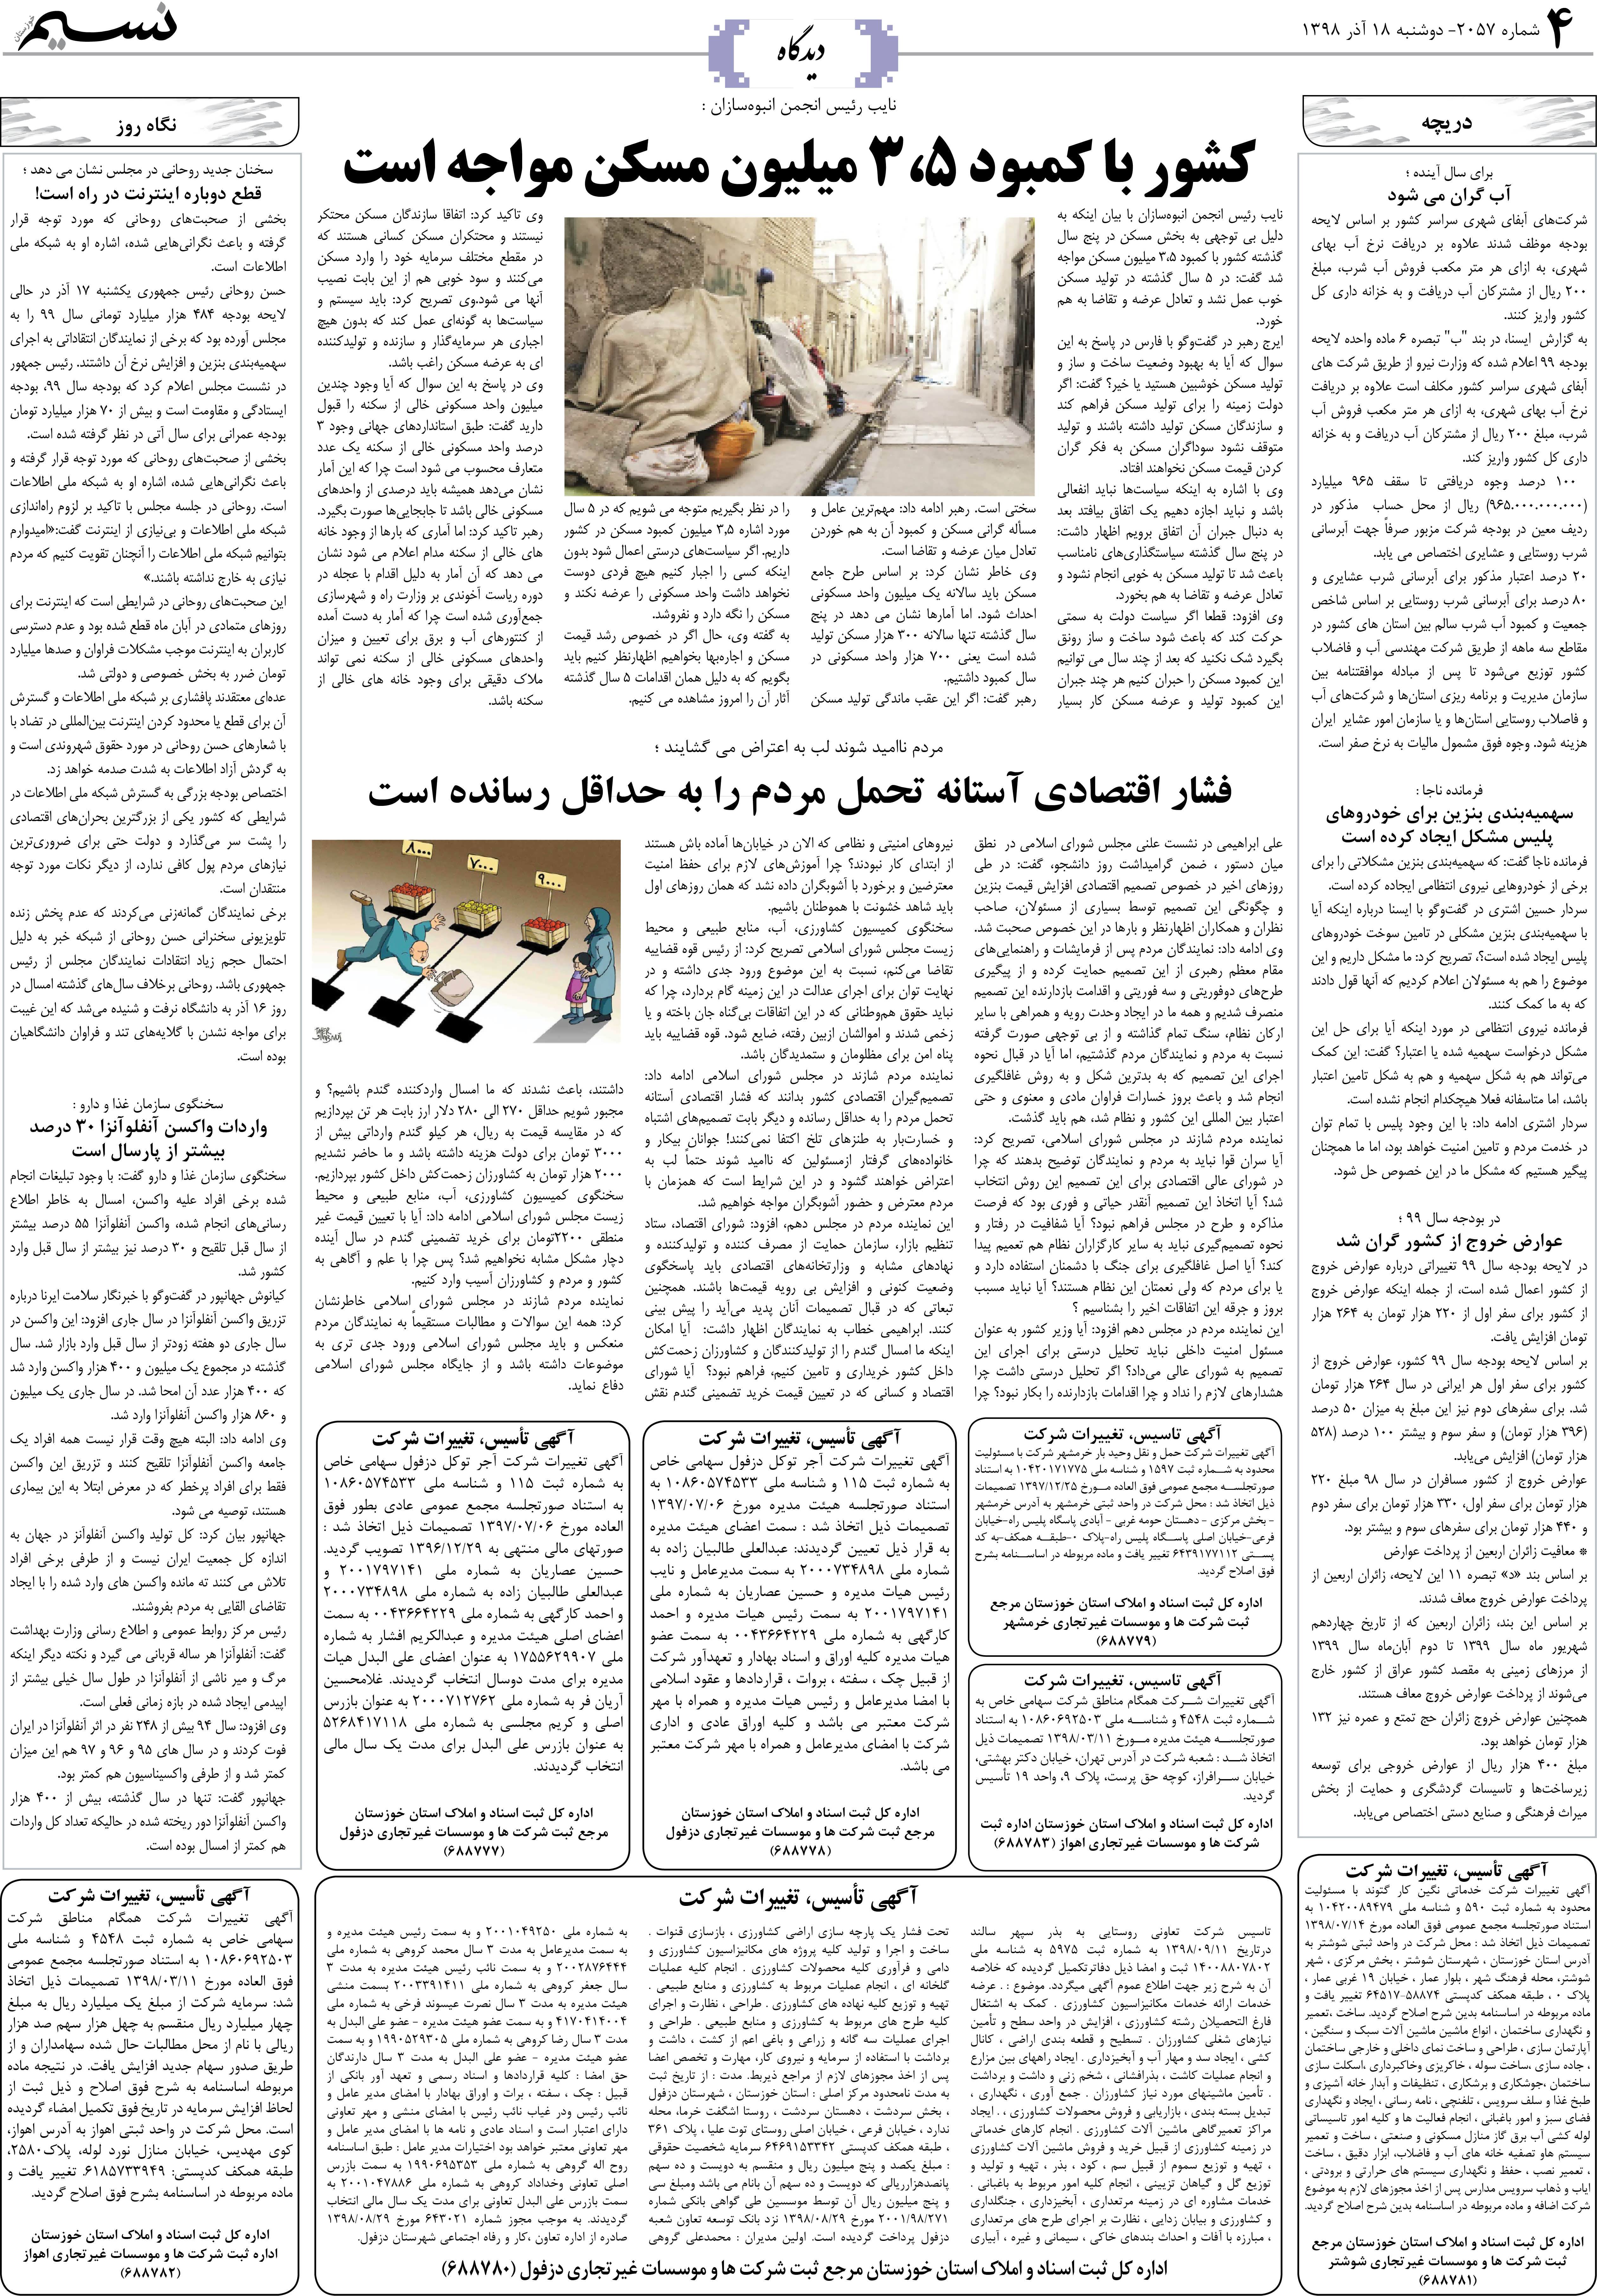 صفحه دیدگاه روزنامه نسیم شماره 2057